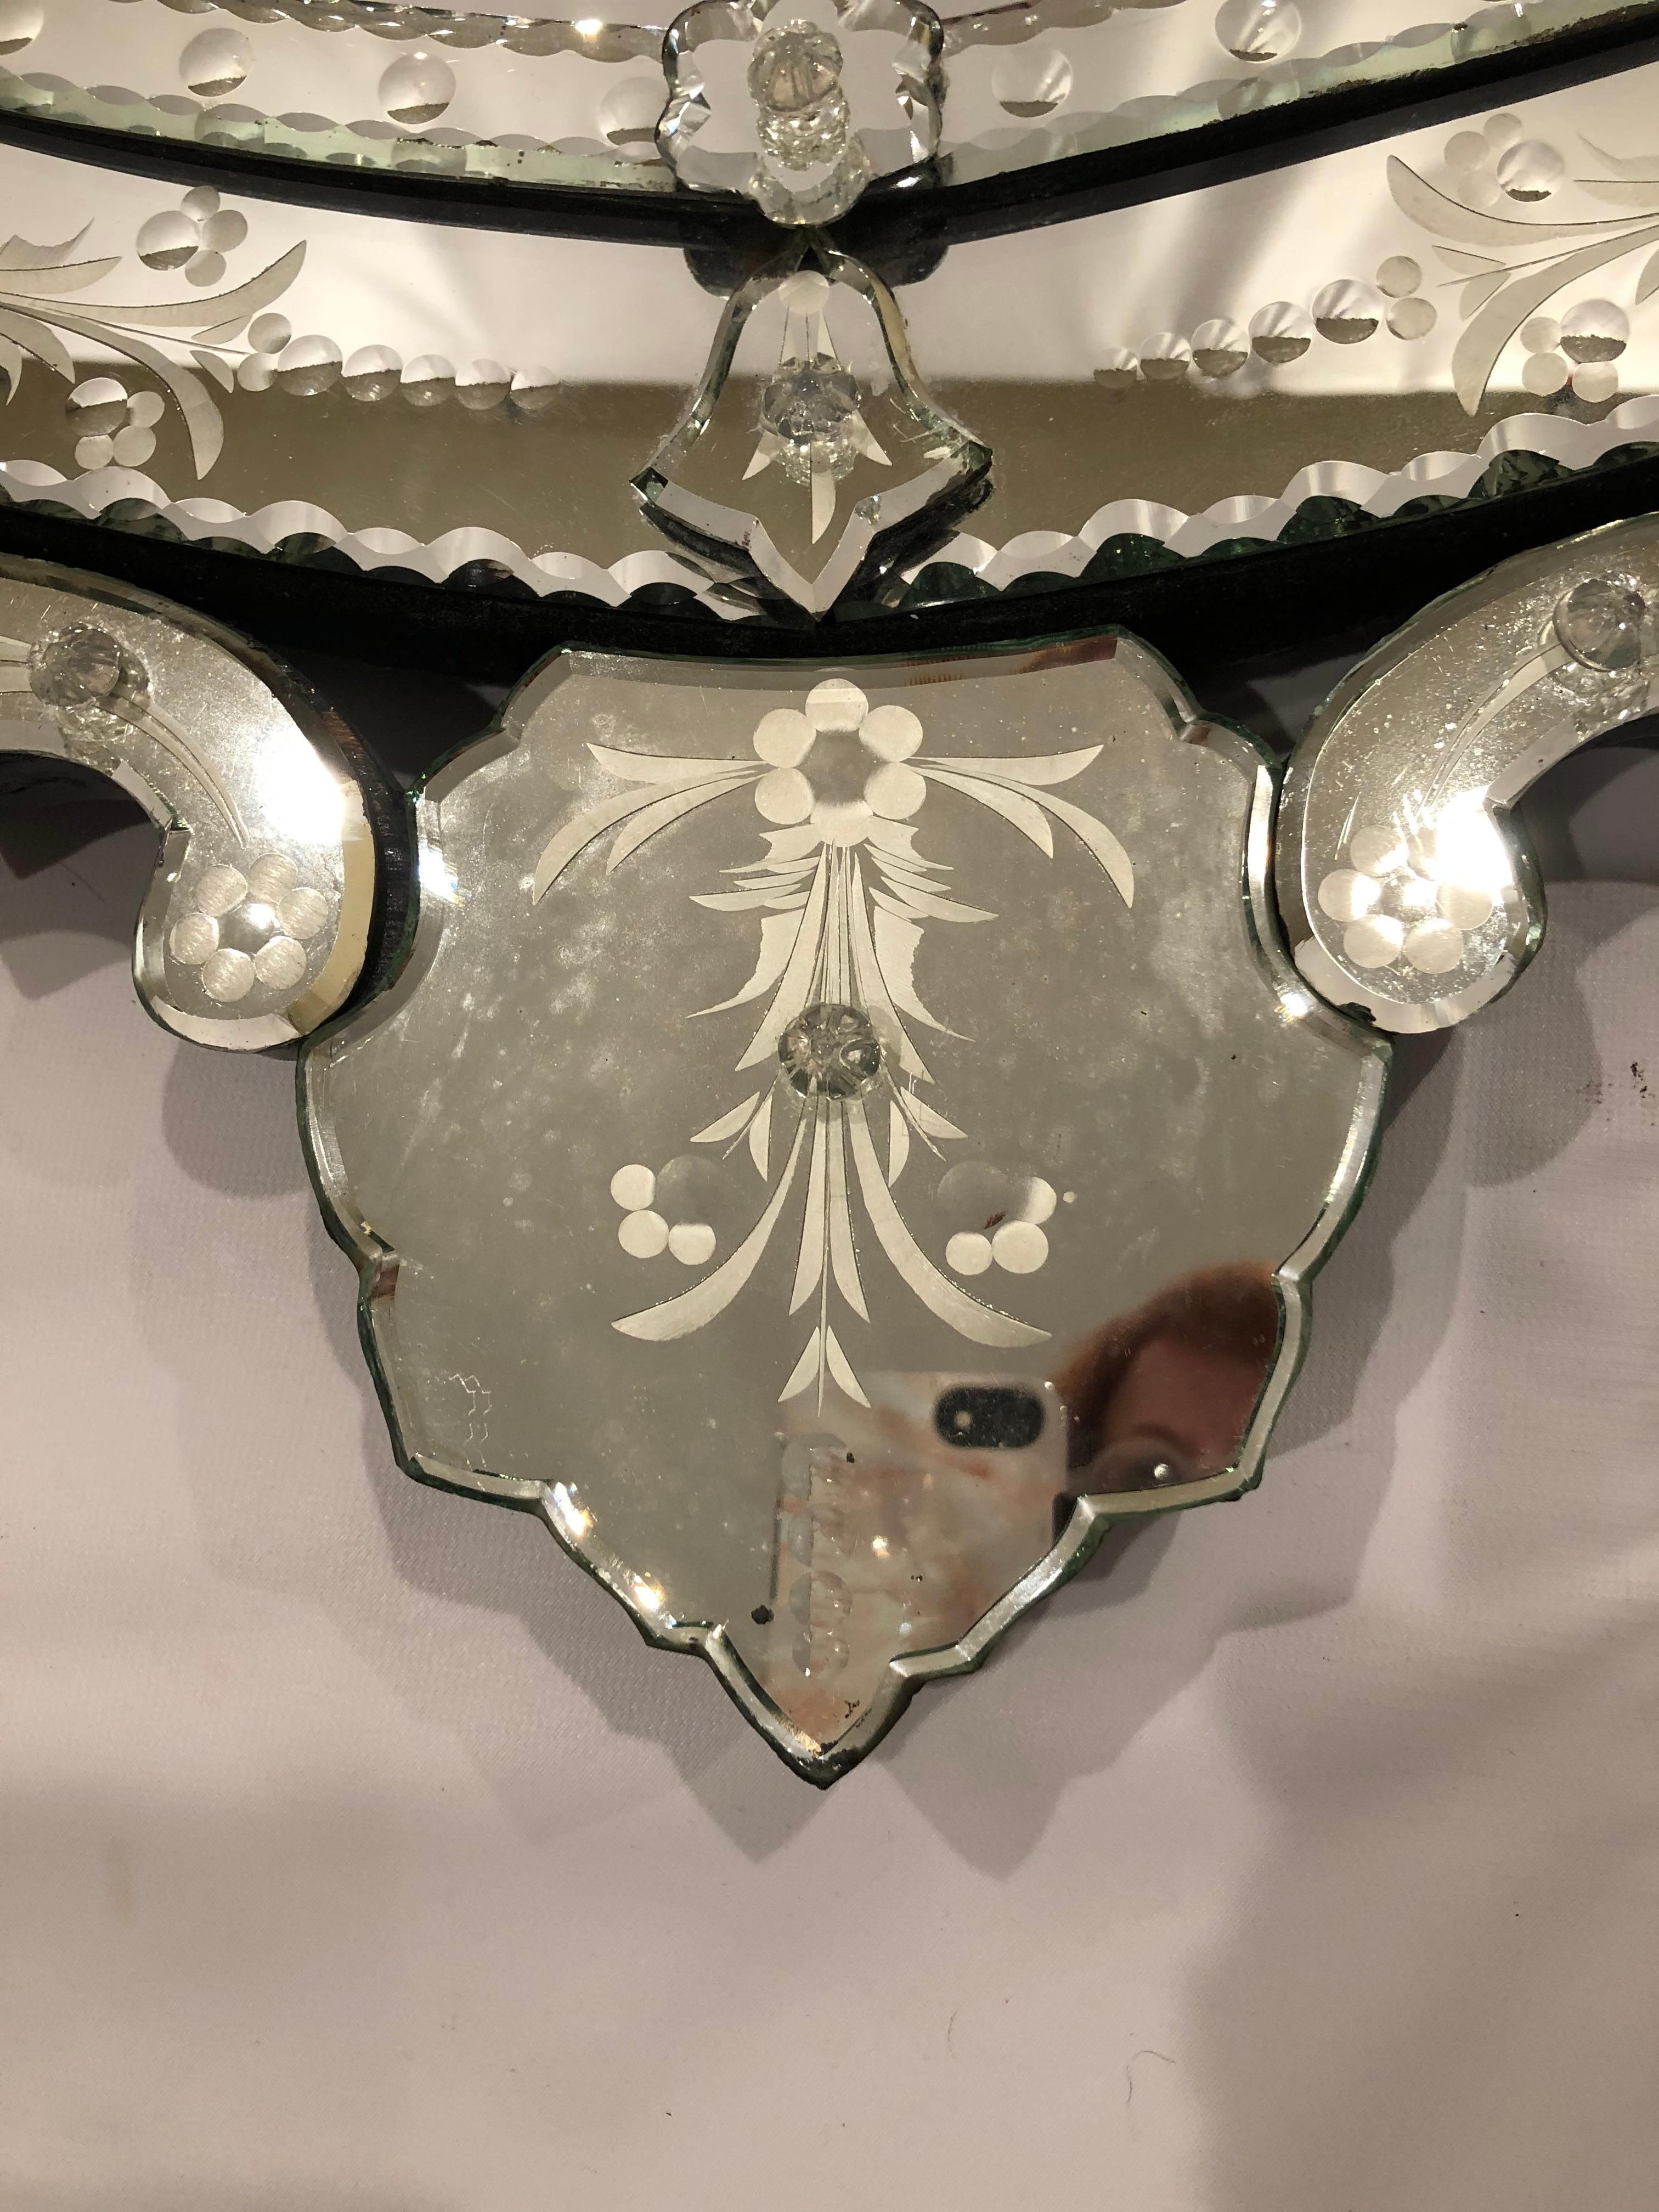 Magnifique miroir de style vénitien en forme de poire, aux détails méticuleux, avec une crête ornée et une belle gravure autour du cadre.